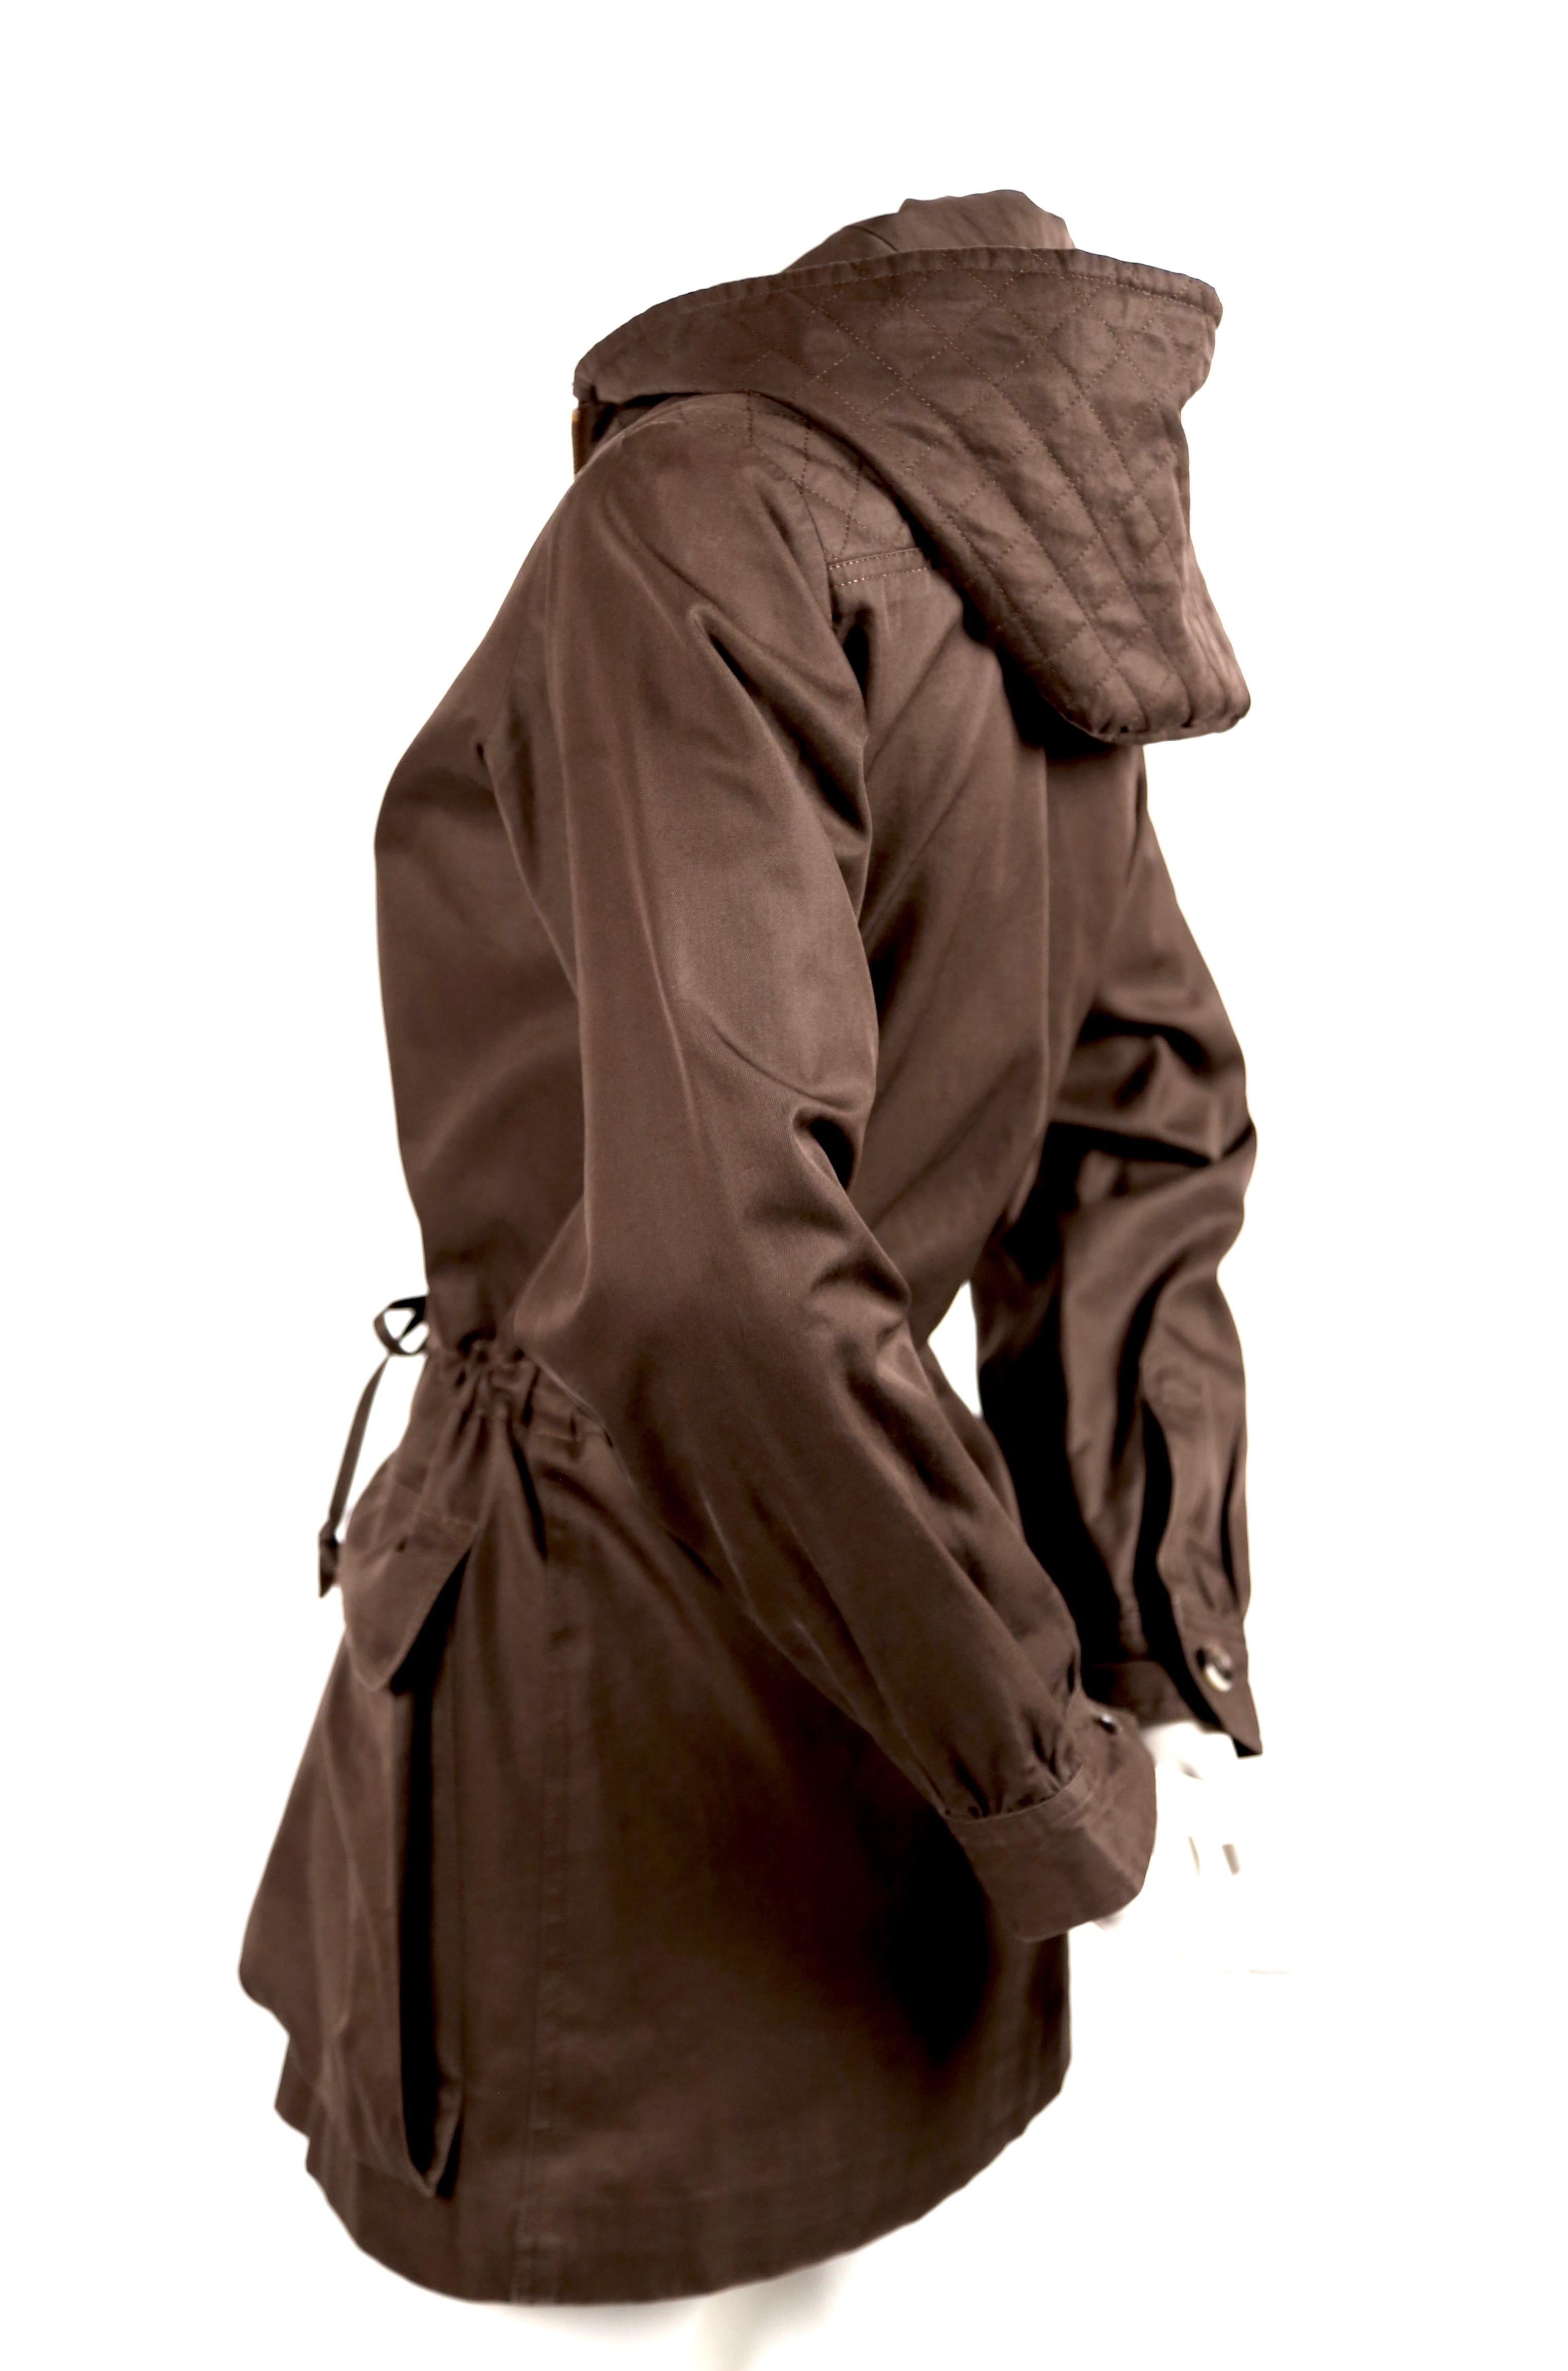 Dokumentierte braune Baumwolljacke mit gesteppter Kapuze, entworfen von Yves Saint Laurent aus dem Jahr 1973.  Es ist keine Größe angegeben, aber diese Jacke passt am besten in Größe 2-6, je nach gewünschter Passform. Ungefähre Maße: Schulter 15